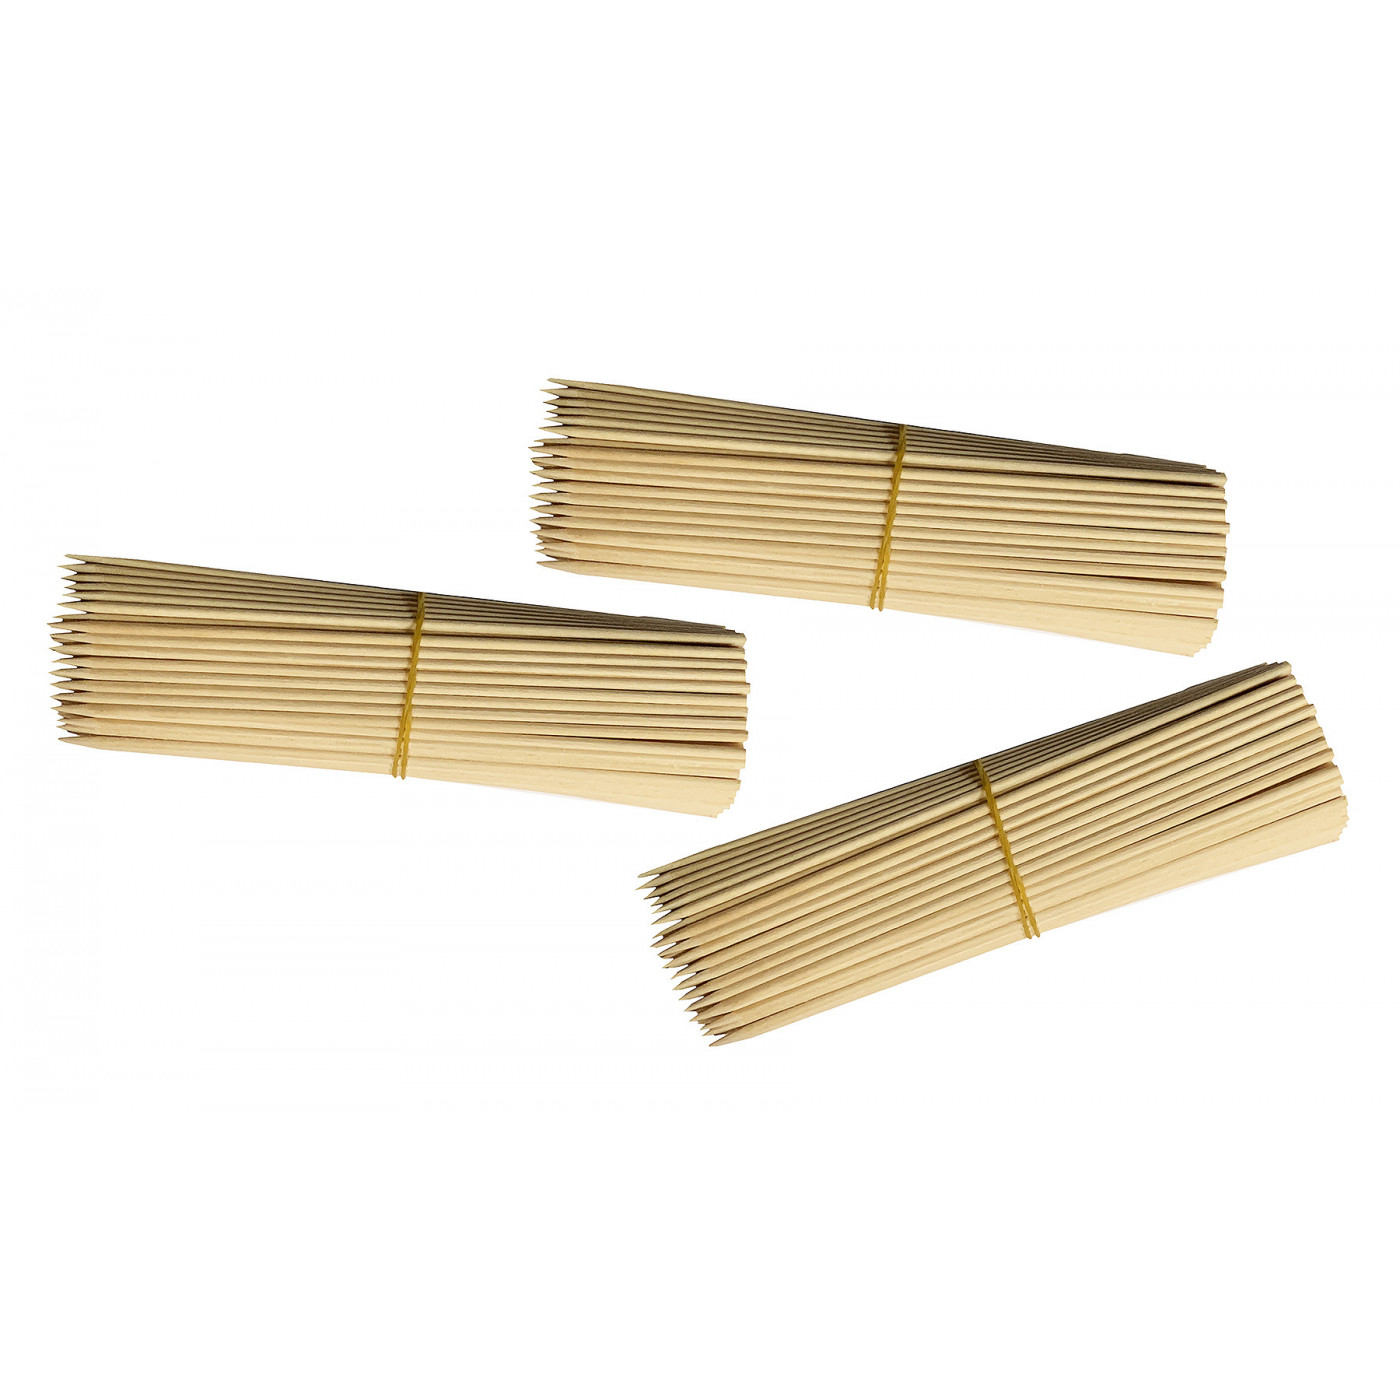 Set of 750 wooden sticks (3 mm x 18 cm, birch wood, pointed)